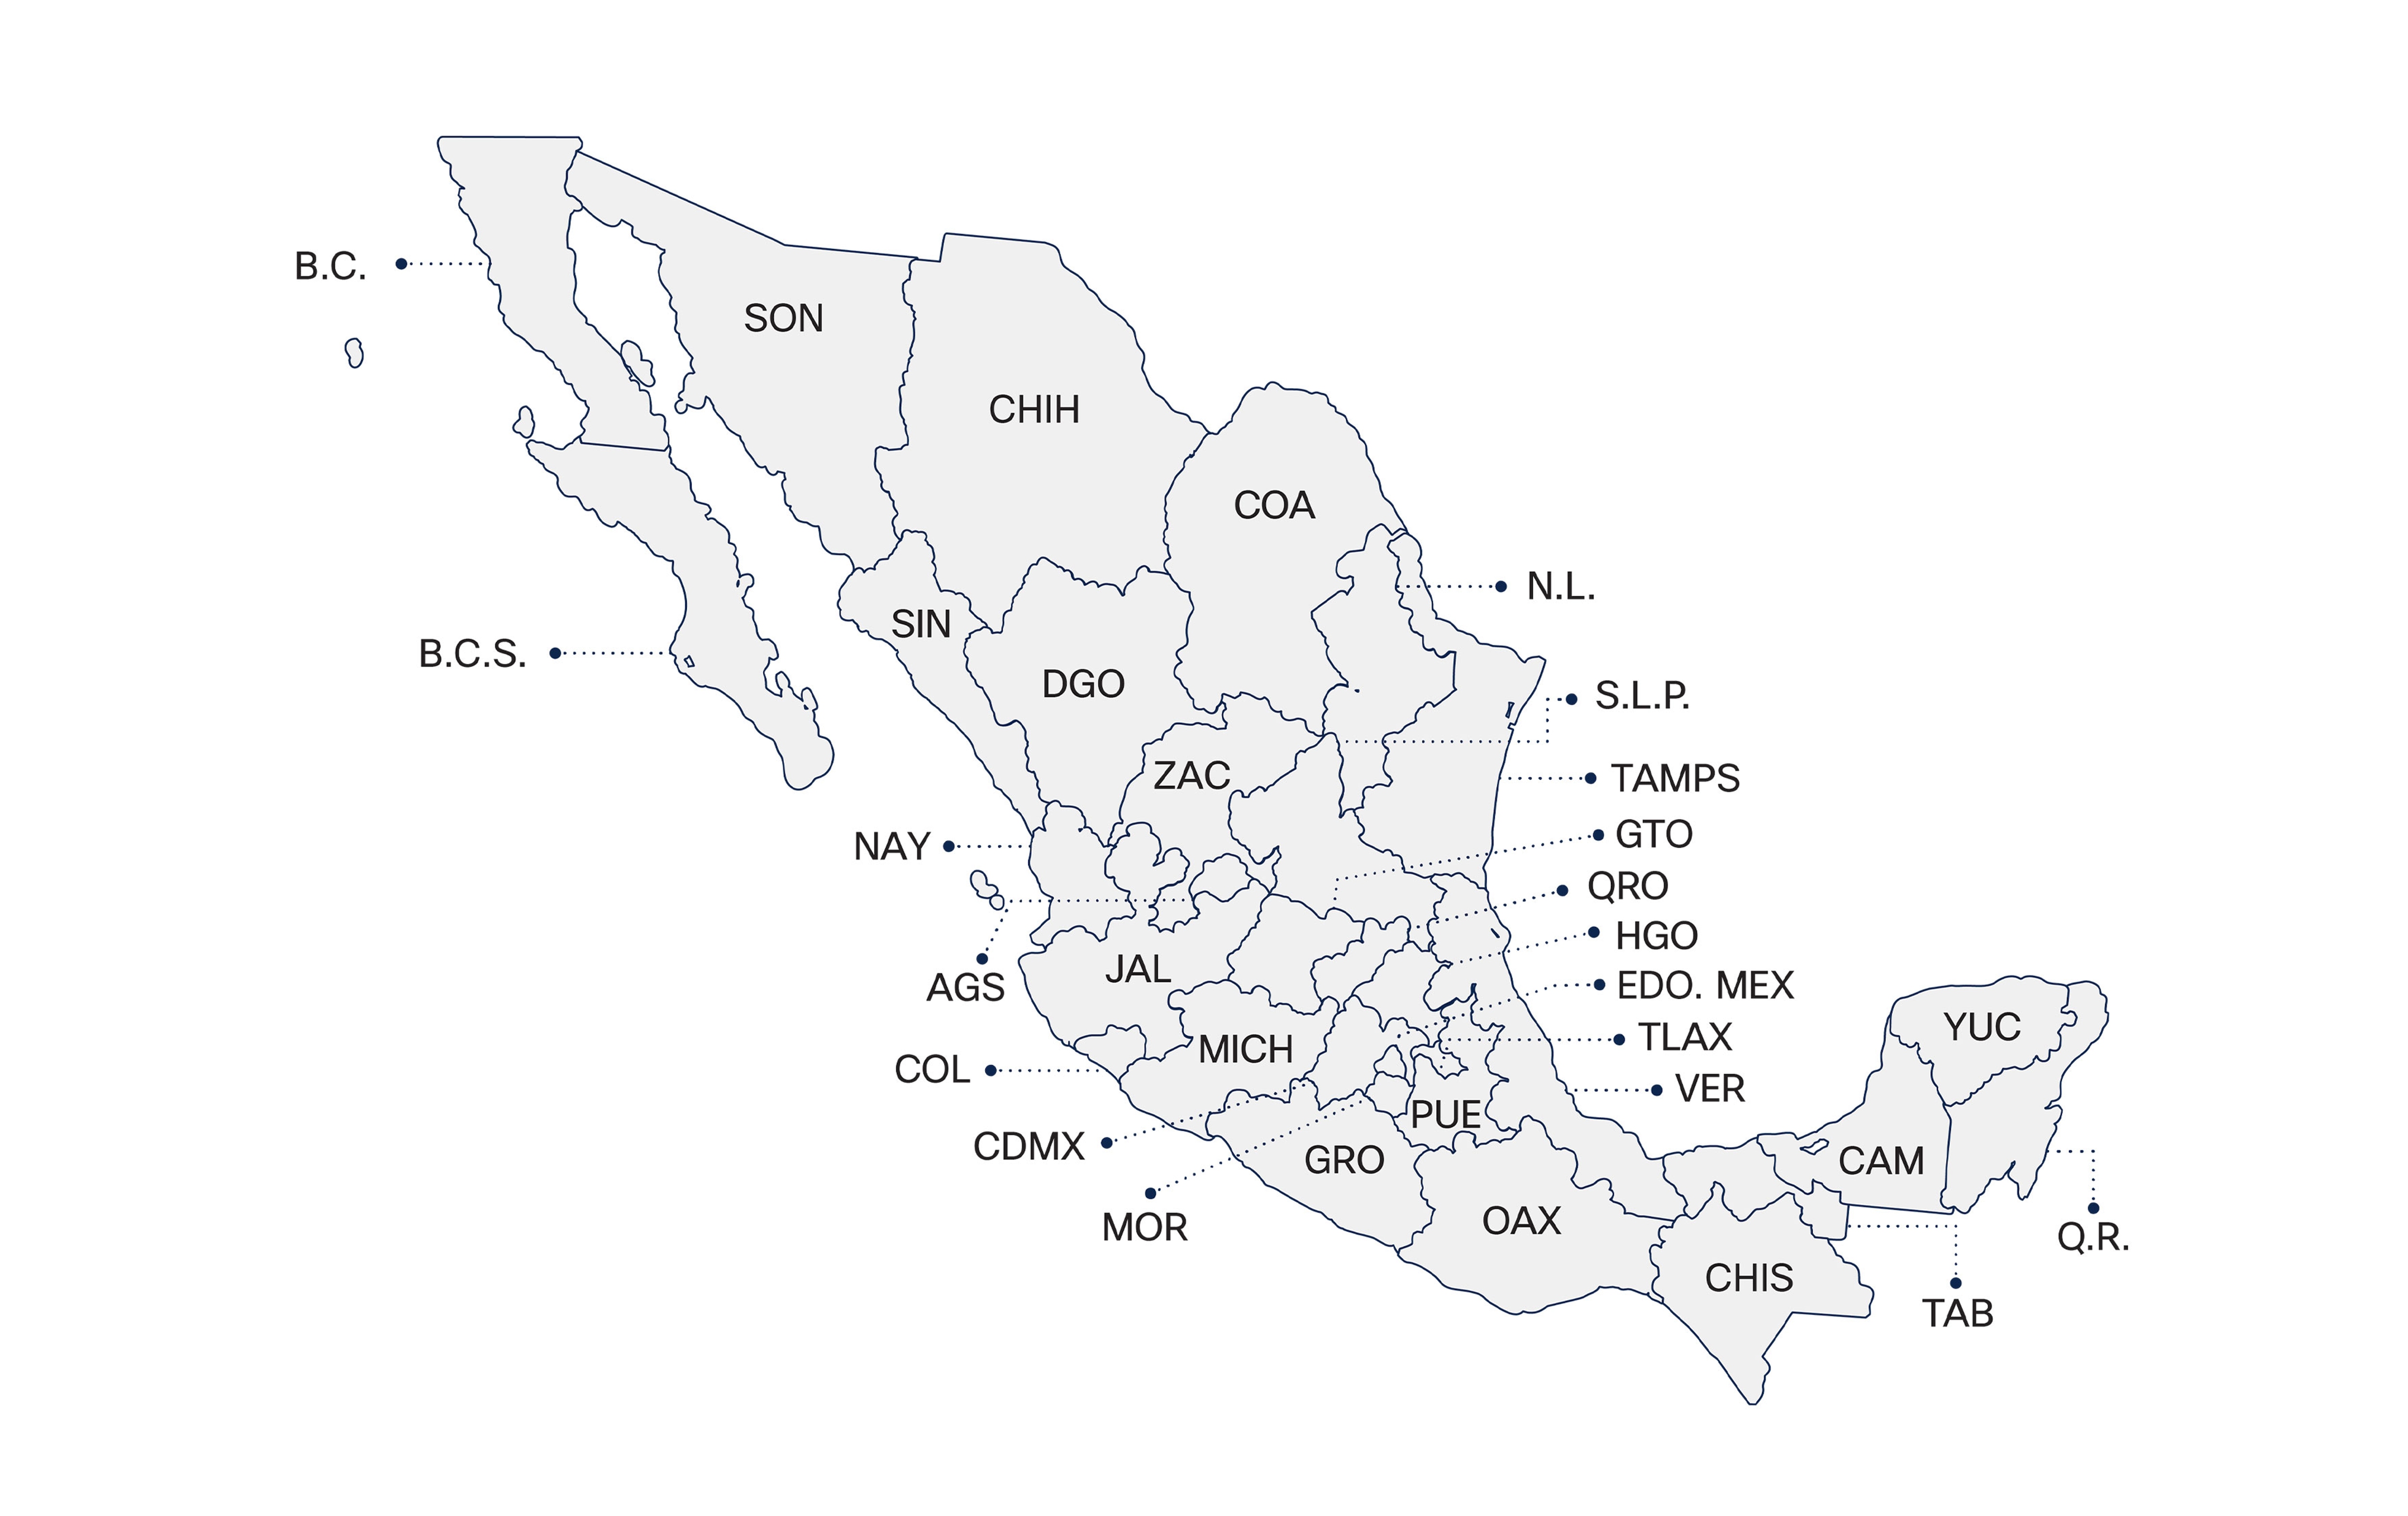 Mapa de las entidades federativas de México